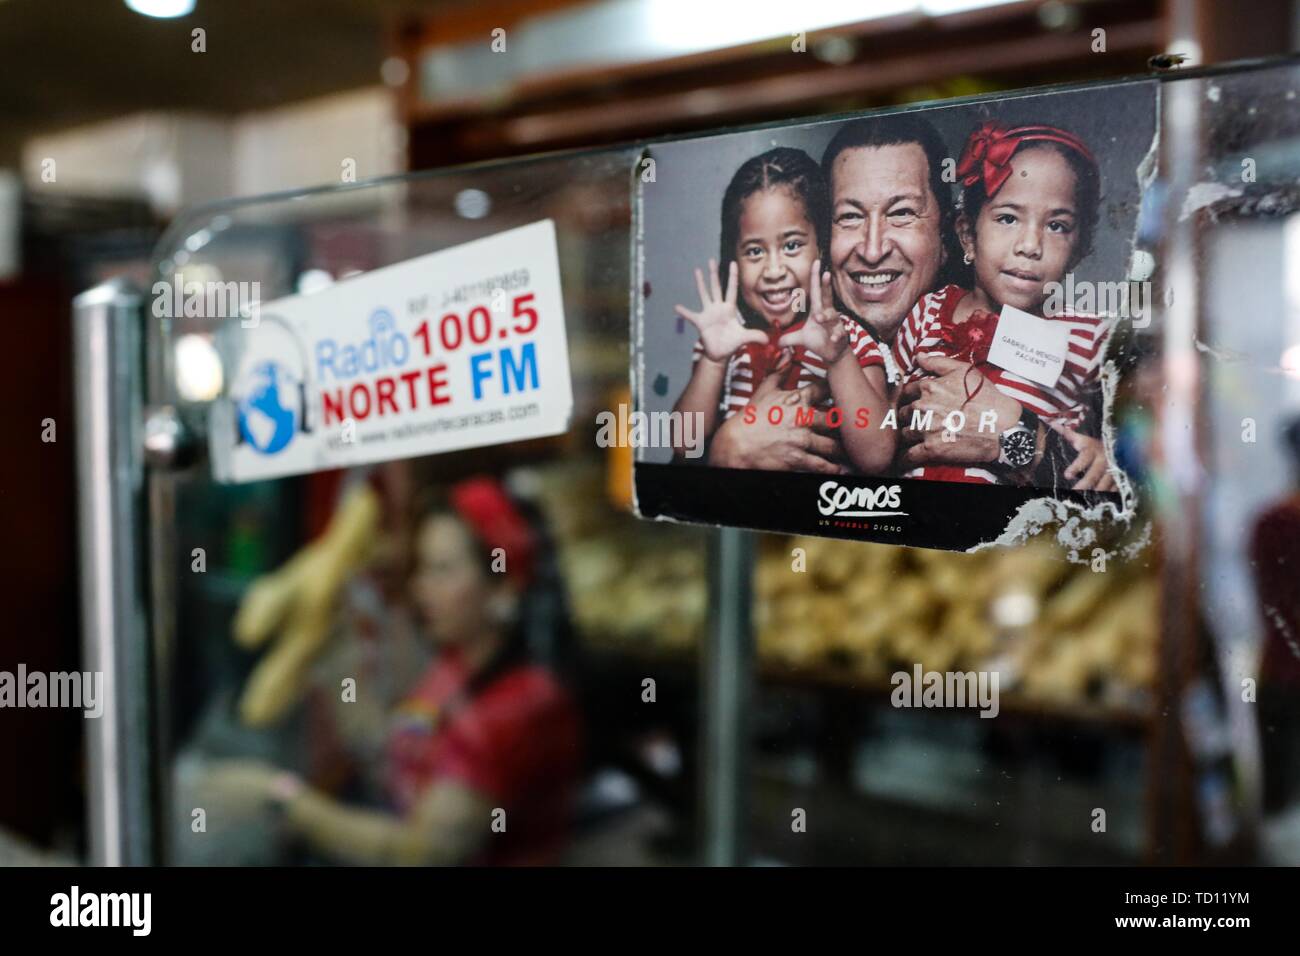 05. Juni 2019, Venezuela, Caracas: 'Wir sind Liebe', steht unter dem Bild des verstorbenen Präsidenten Hugo Chavez (M.) mit zwei Kindern in der Bäckerei 'La Minka, die von Anhängern der Regierung. Alle Mitarbeiter haben den Beruf in der Bäckerei gelernt. Der jüngste Teil der Mannschaft für 15 Tage. Die ehemalige private Bäckerei war 'Mansion Bäckerei' genannt. Jetzt rund 6.000 Stücke Brot gibt es jeden Tag bei der Preise durch den Staat produziert. Das Land mit den größten Ölreserven der Welt befindet sich in einem dramatischen Niedergang. Geld Abwertung ist die höchste in der Welt, für viele Menschen essen ist unaffo Stockfoto